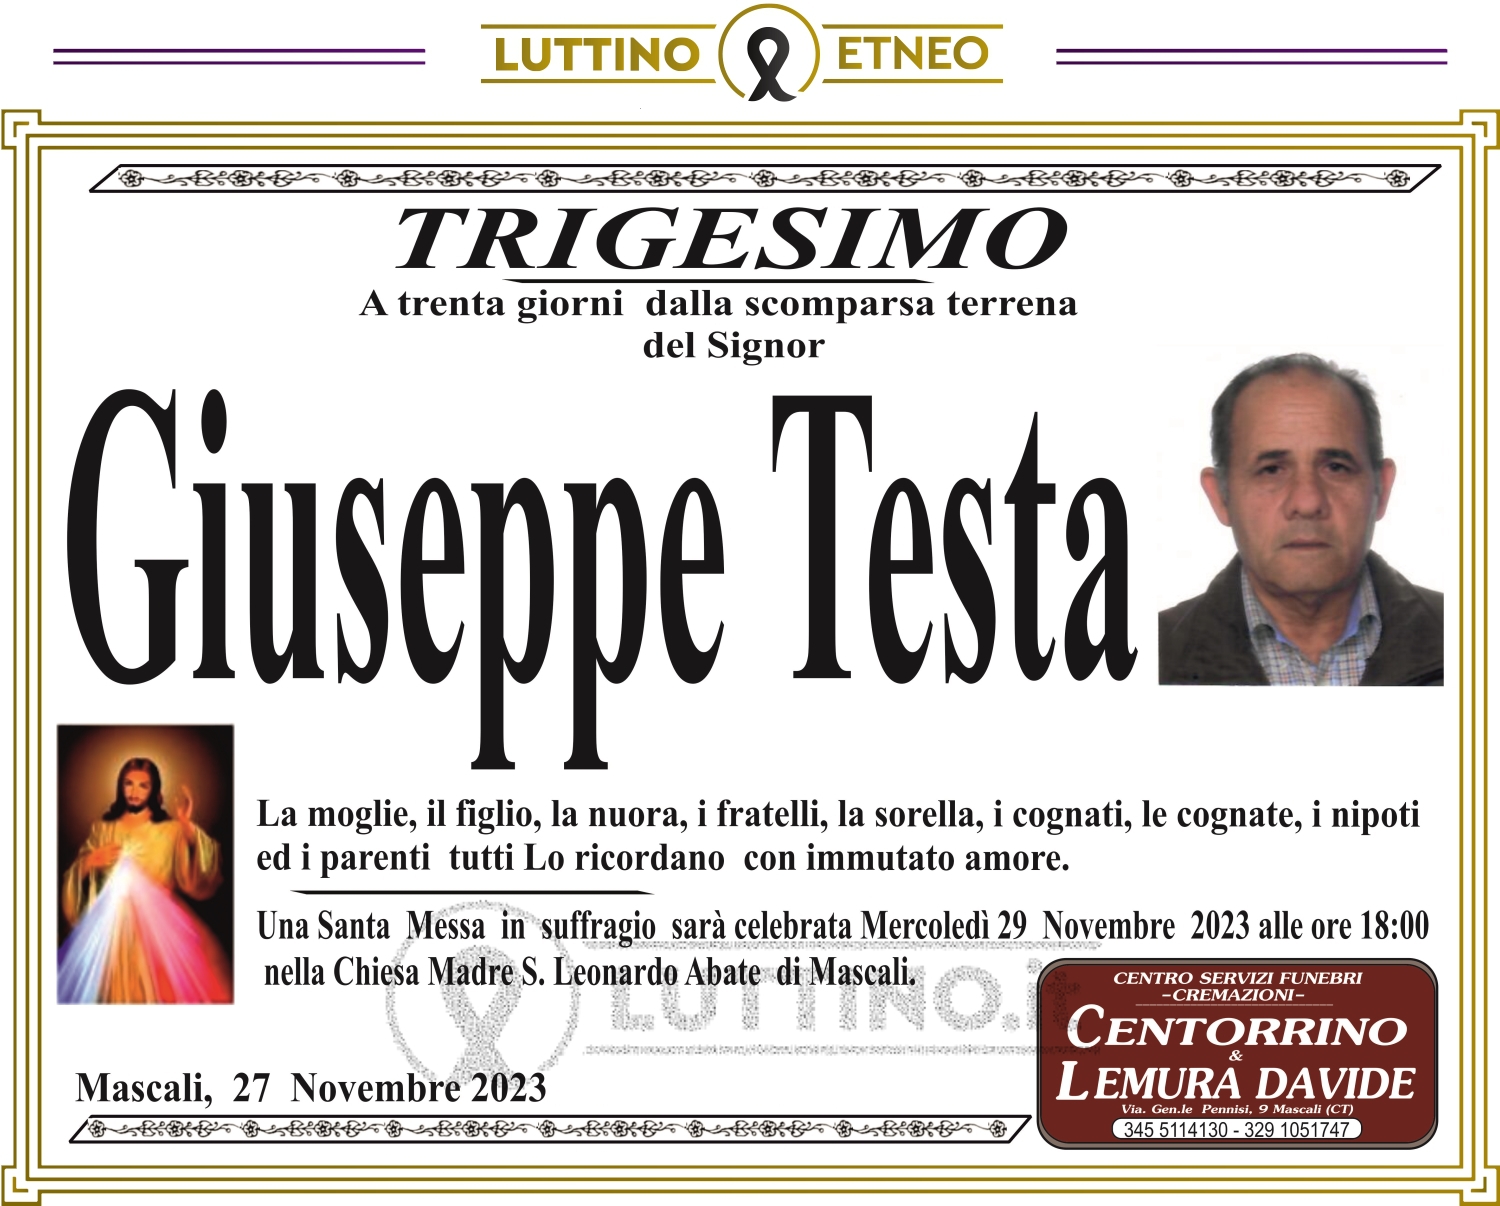 Giuseppe Testa